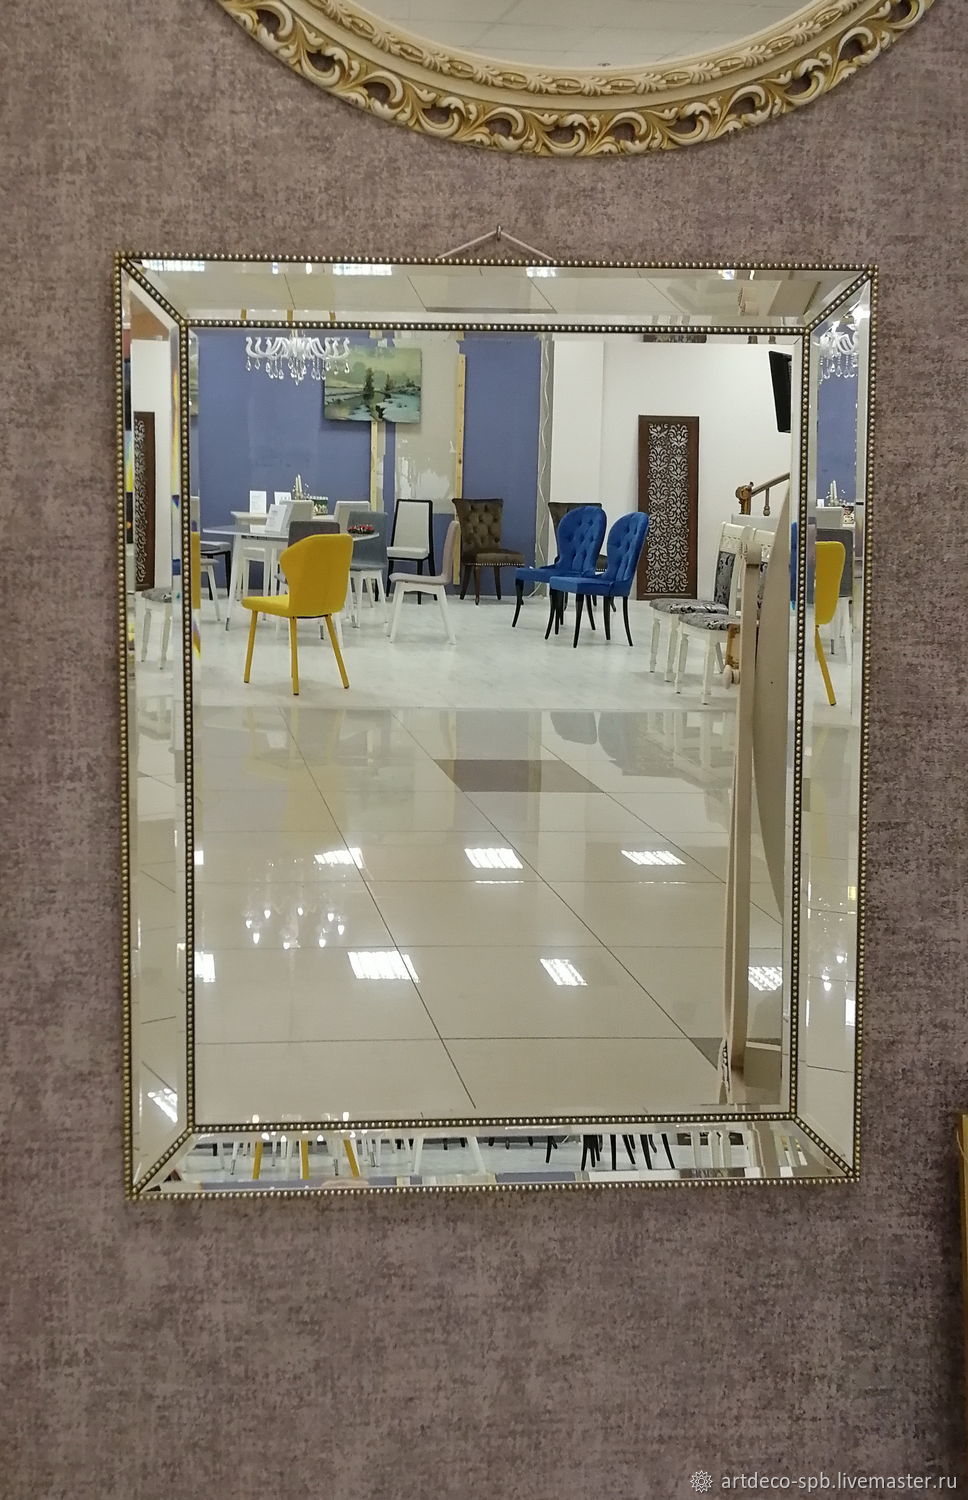 Обрамление зеркального панно